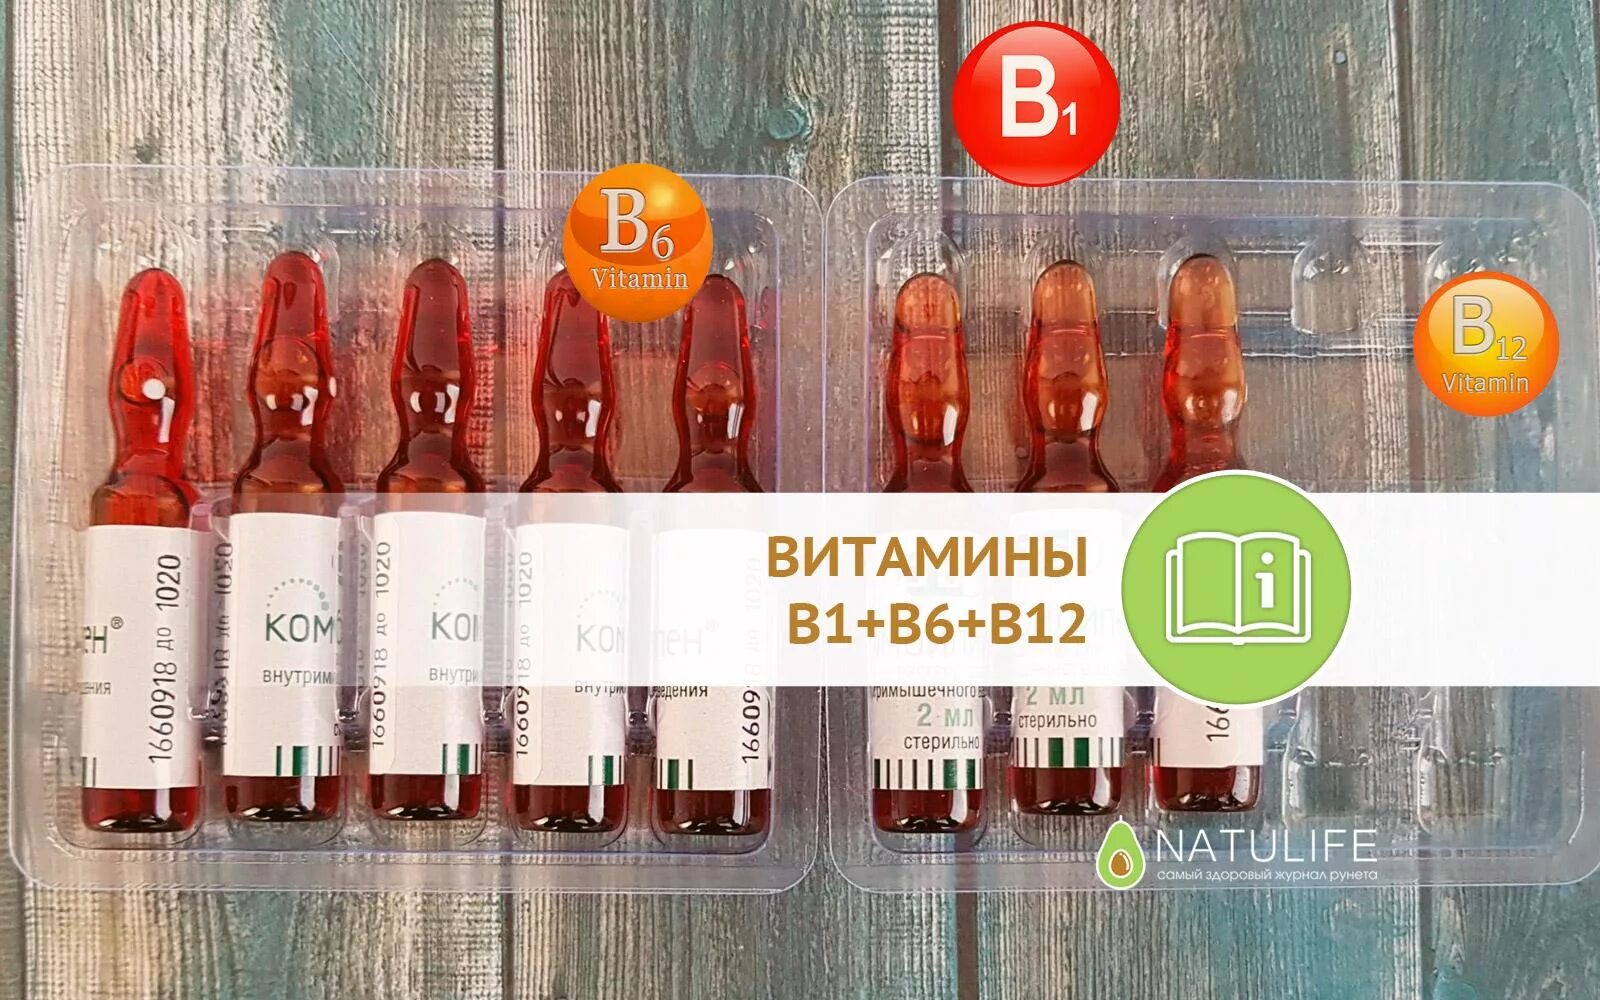 Витамин б6 колоть. Витамины б1 б6 уколы. Комплекс витаминов б1 б6 б12 в ампулах. B1 b6 b12 витамины в ампулах JN pfgjz. Комплекс б1 б6 б12 уколы витамины.